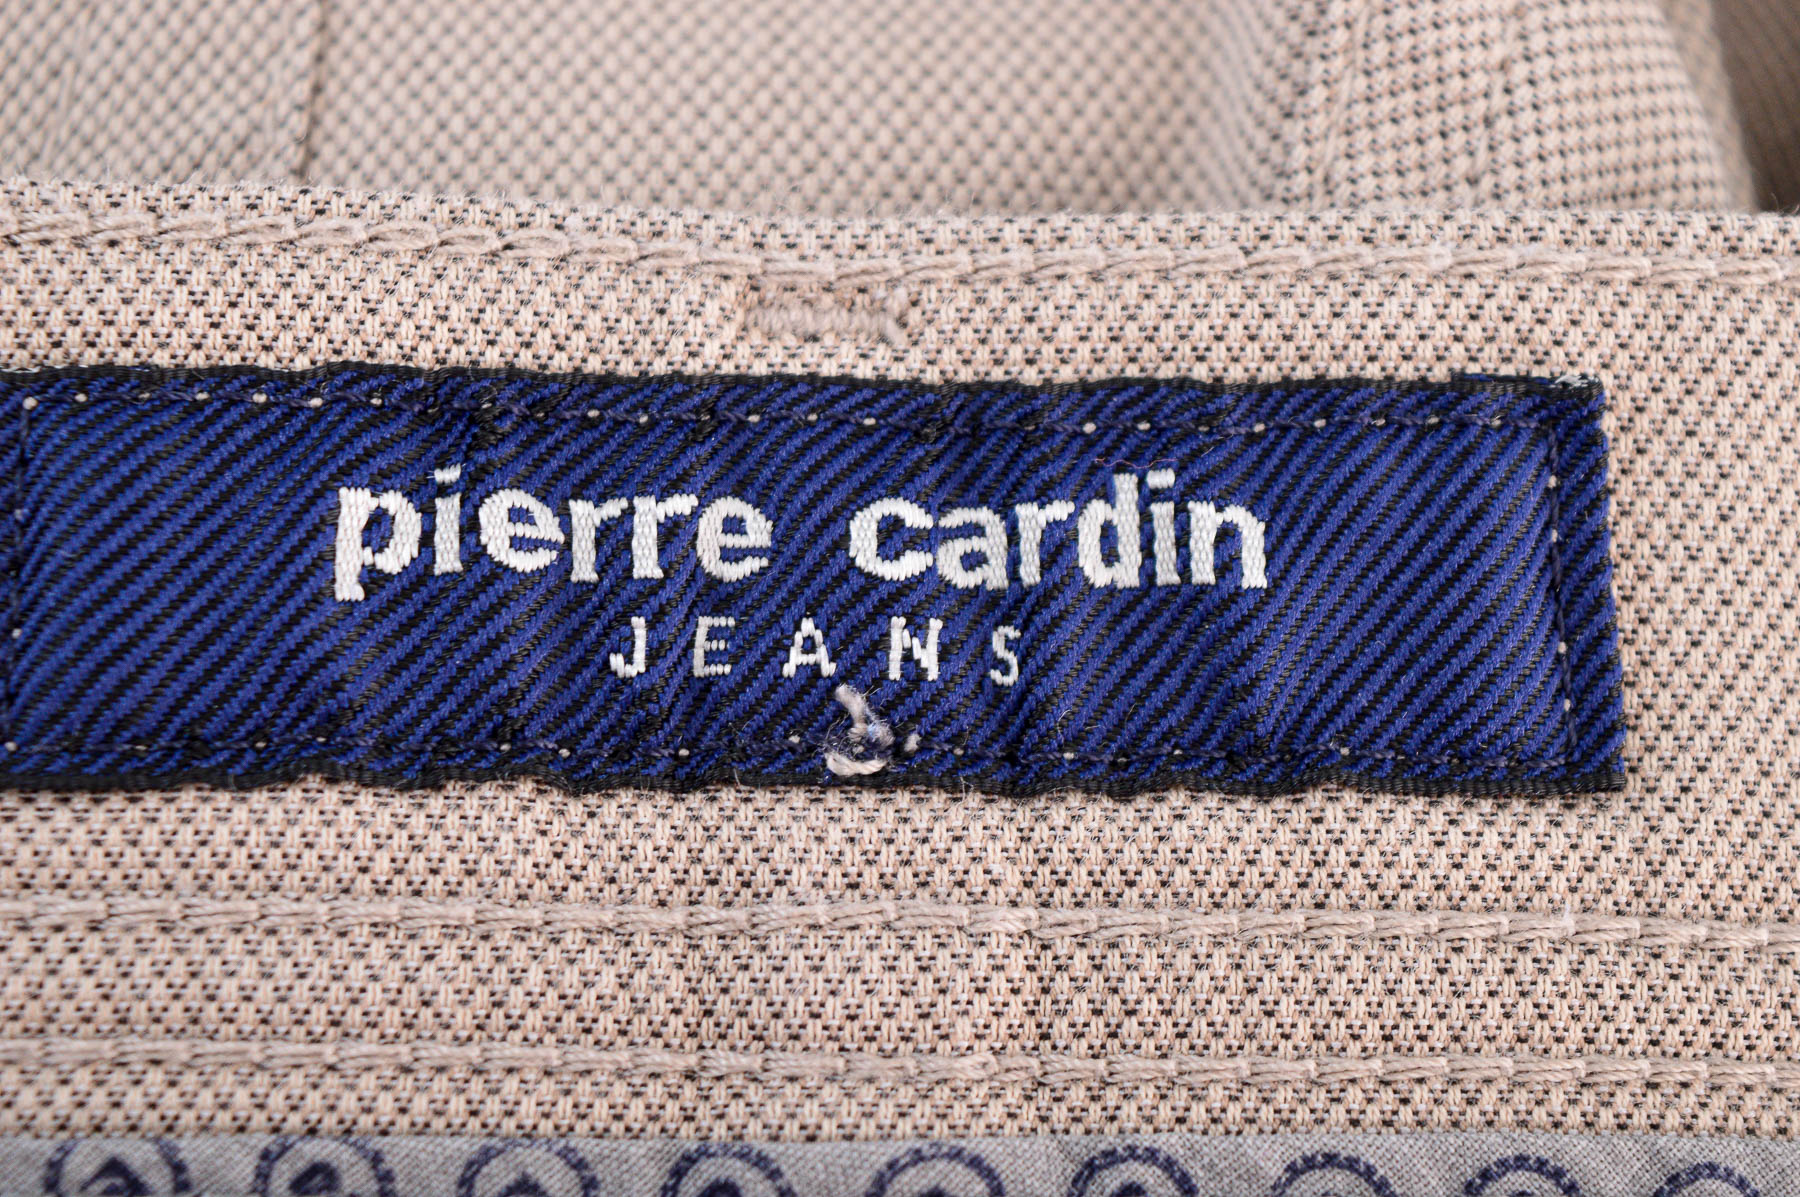 Men's trousers - Pierre Cardin - 2